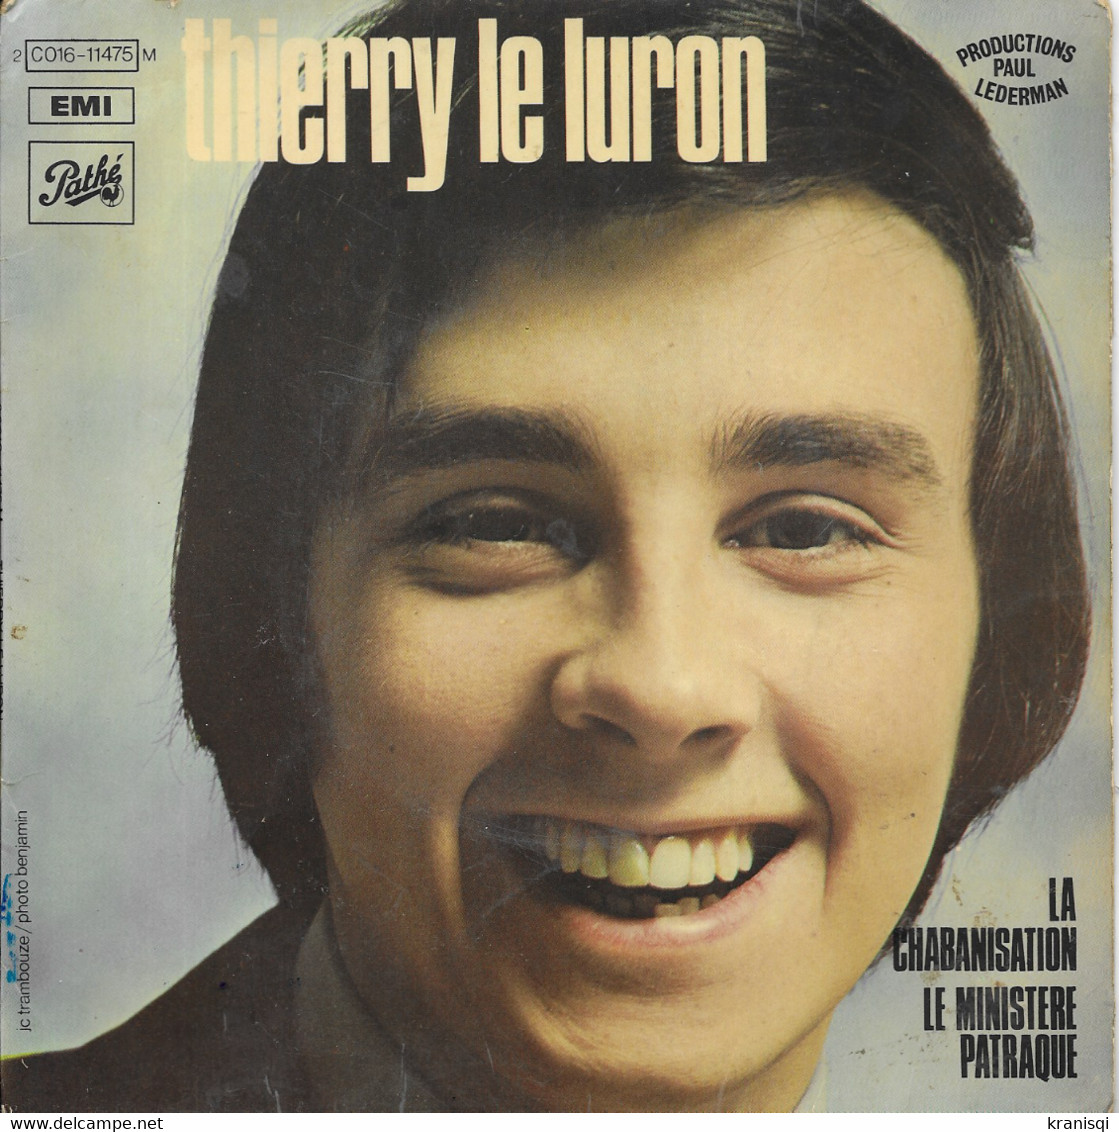 Vinyle 45 T ,Le LURON 1971 - Humour, Cabaret